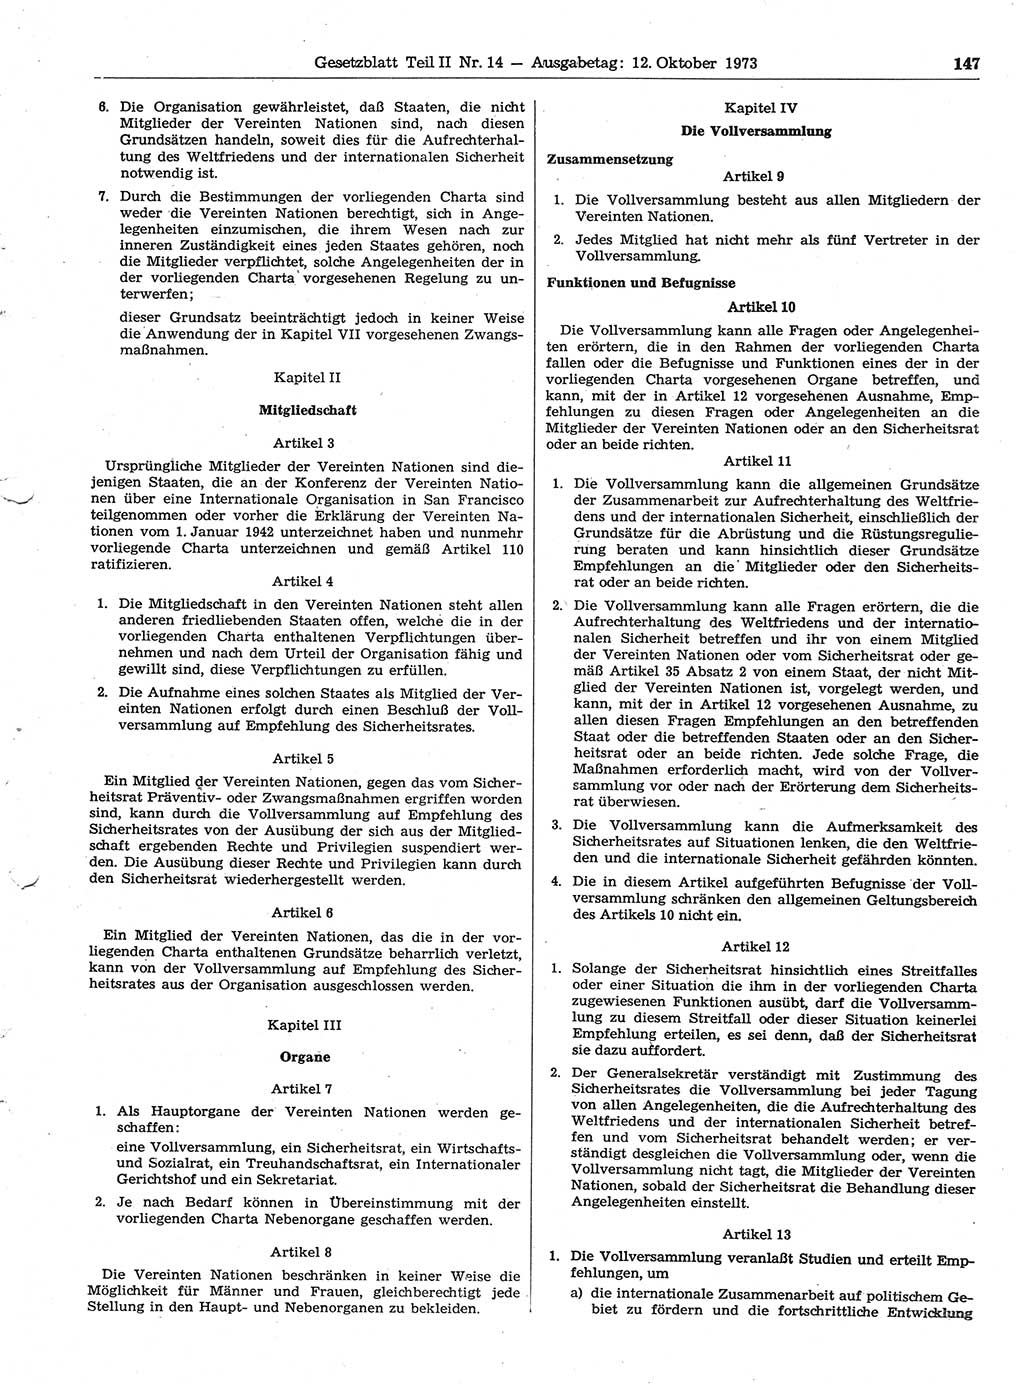 Gesetzblatt (GBl.) der Deutschen Demokratischen Republik (DDR) Teil ⅠⅠ 1973, Seite 147 (GBl. DDR ⅠⅠ 1973, S. 147)